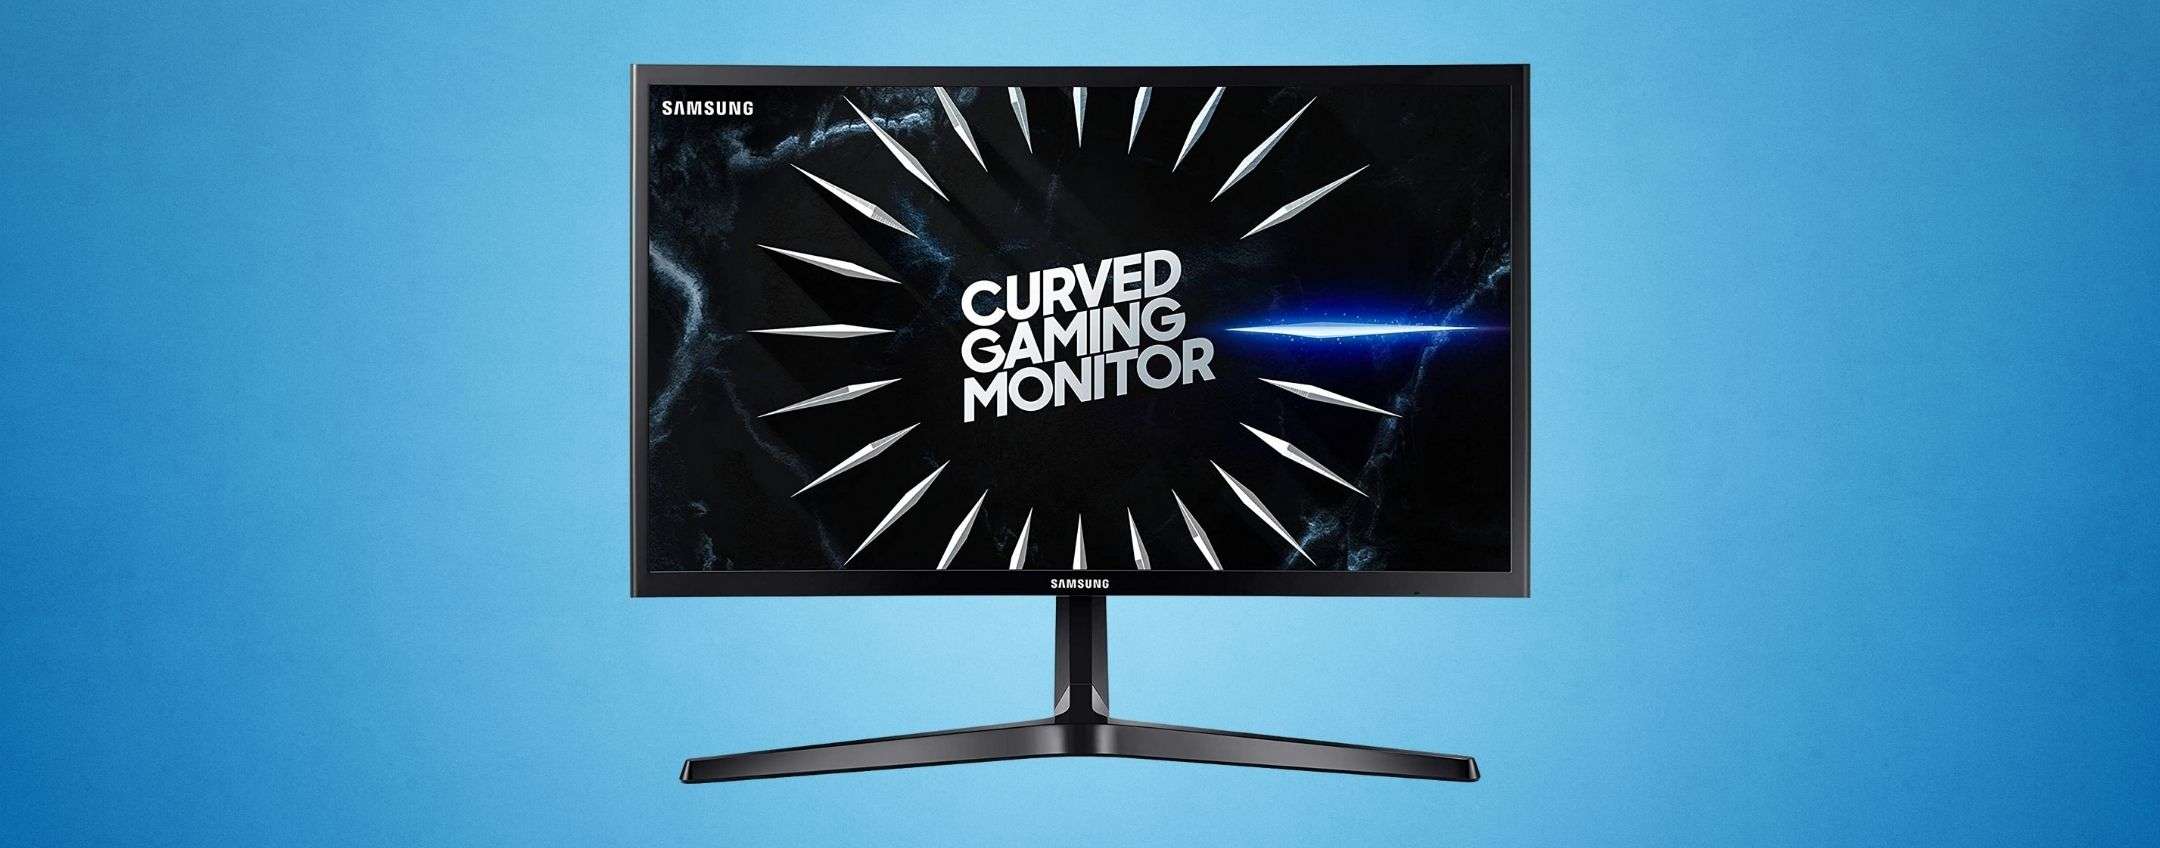 Monitor Gaming curvo 24 144Hz C24RG52